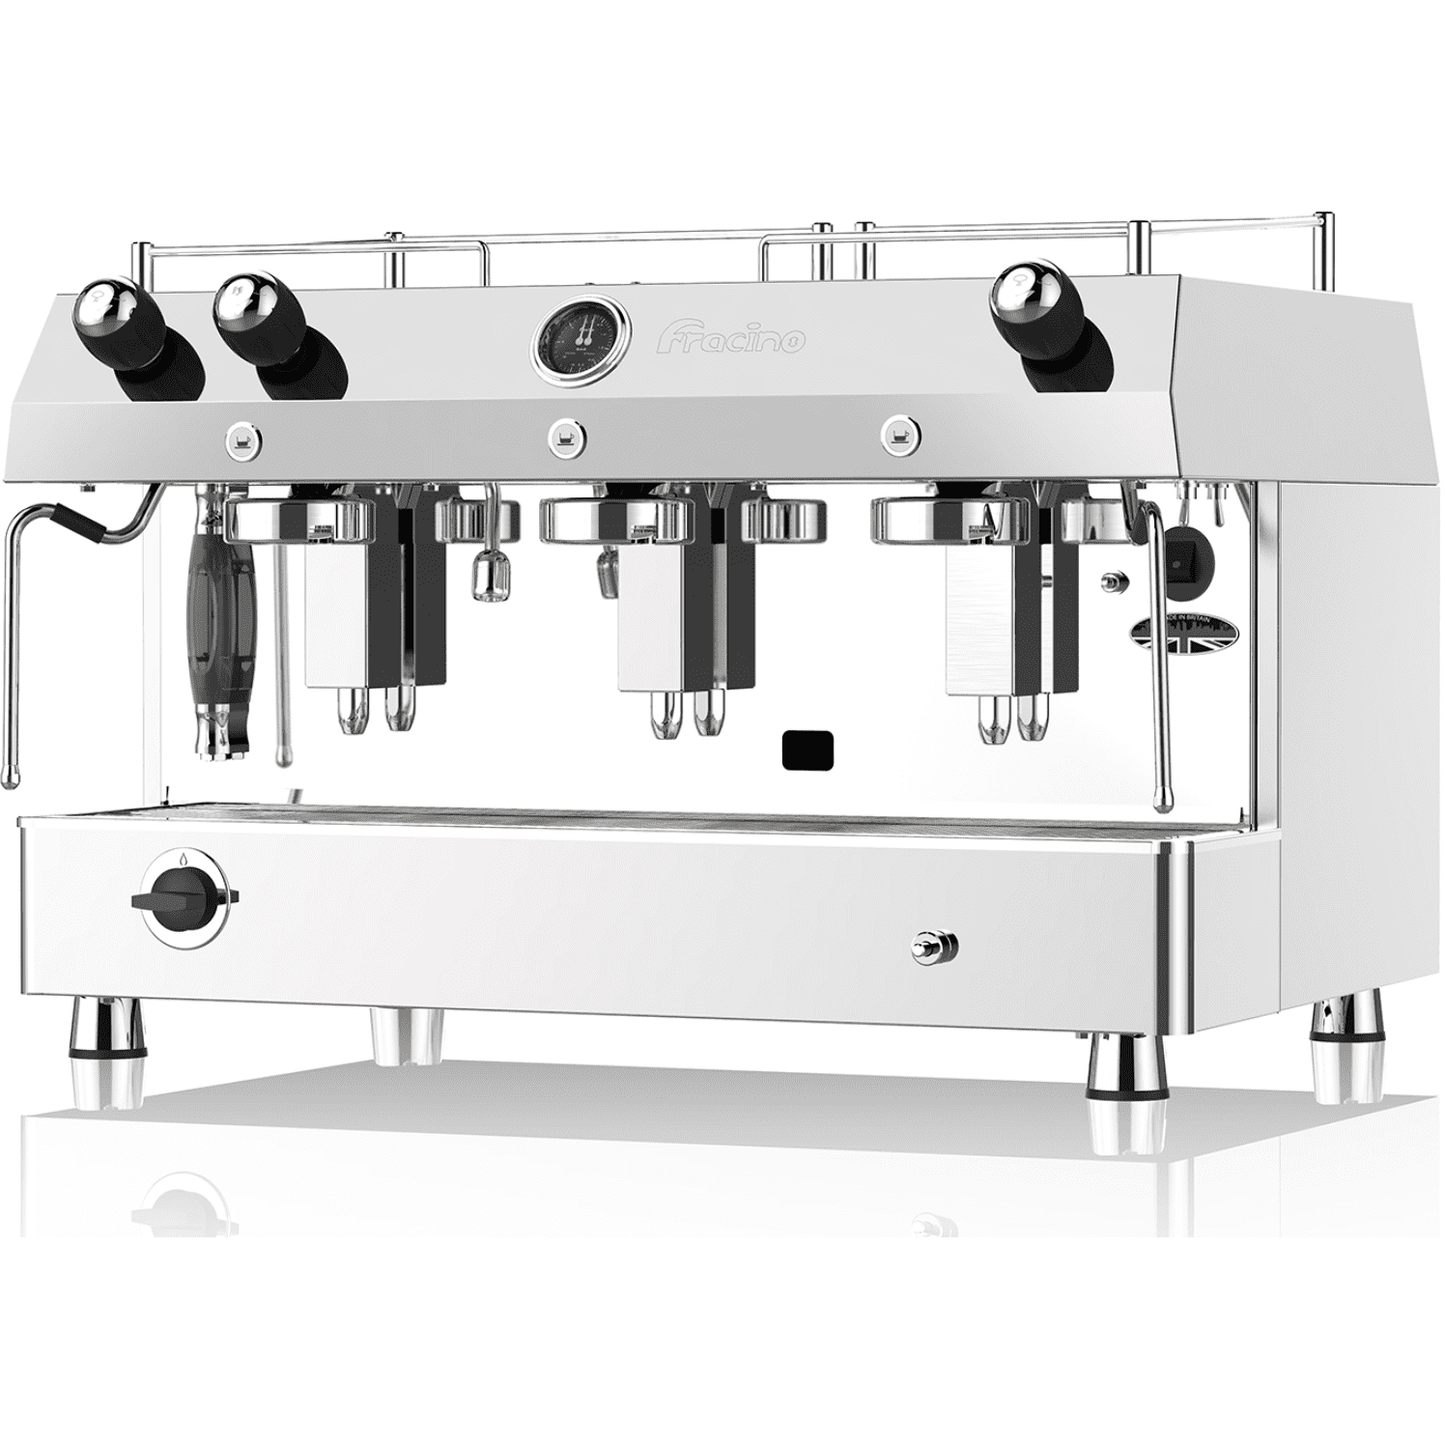 Fracino Contempo Dual Fuel Group 3 Semi Automatic Espresso Coffee Machine